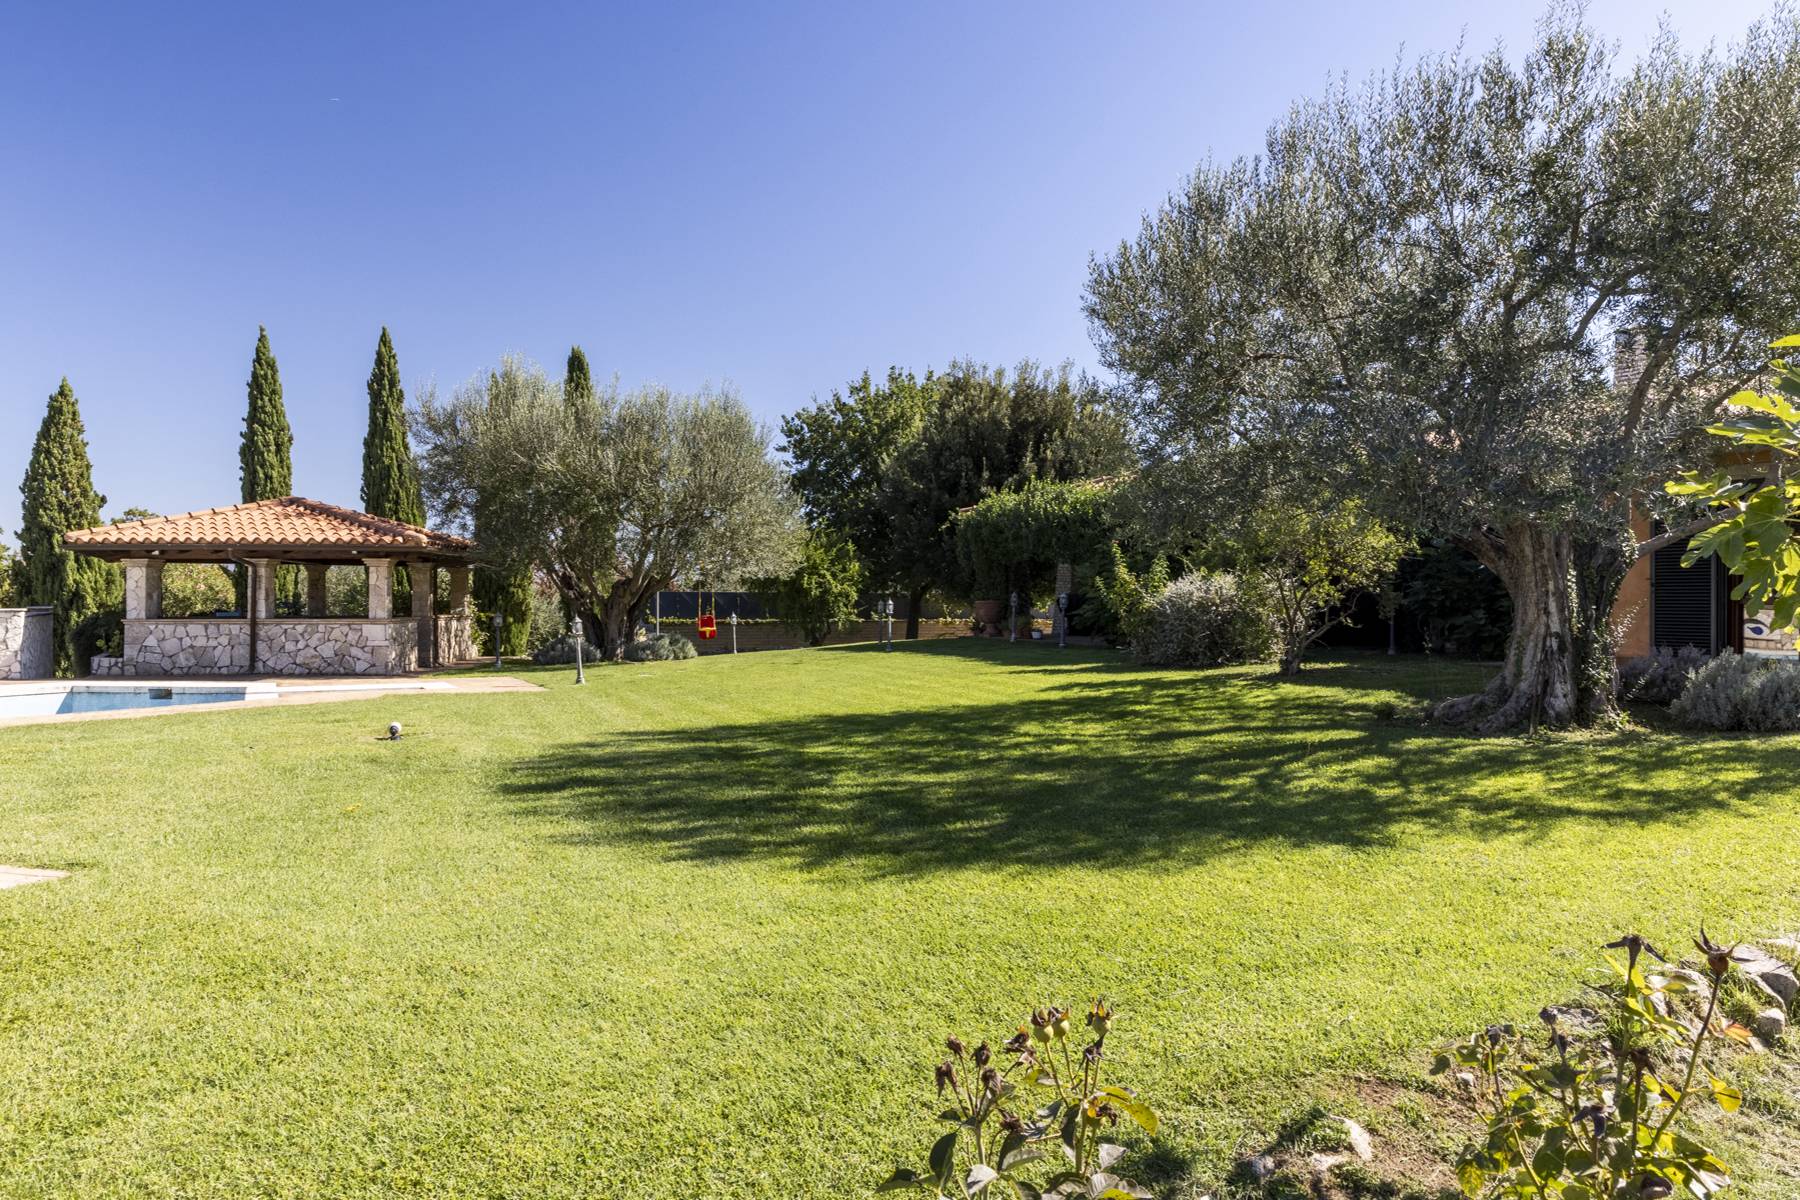 Villa in Vendita a Riano: 5 locali, 500 mq - Foto 7